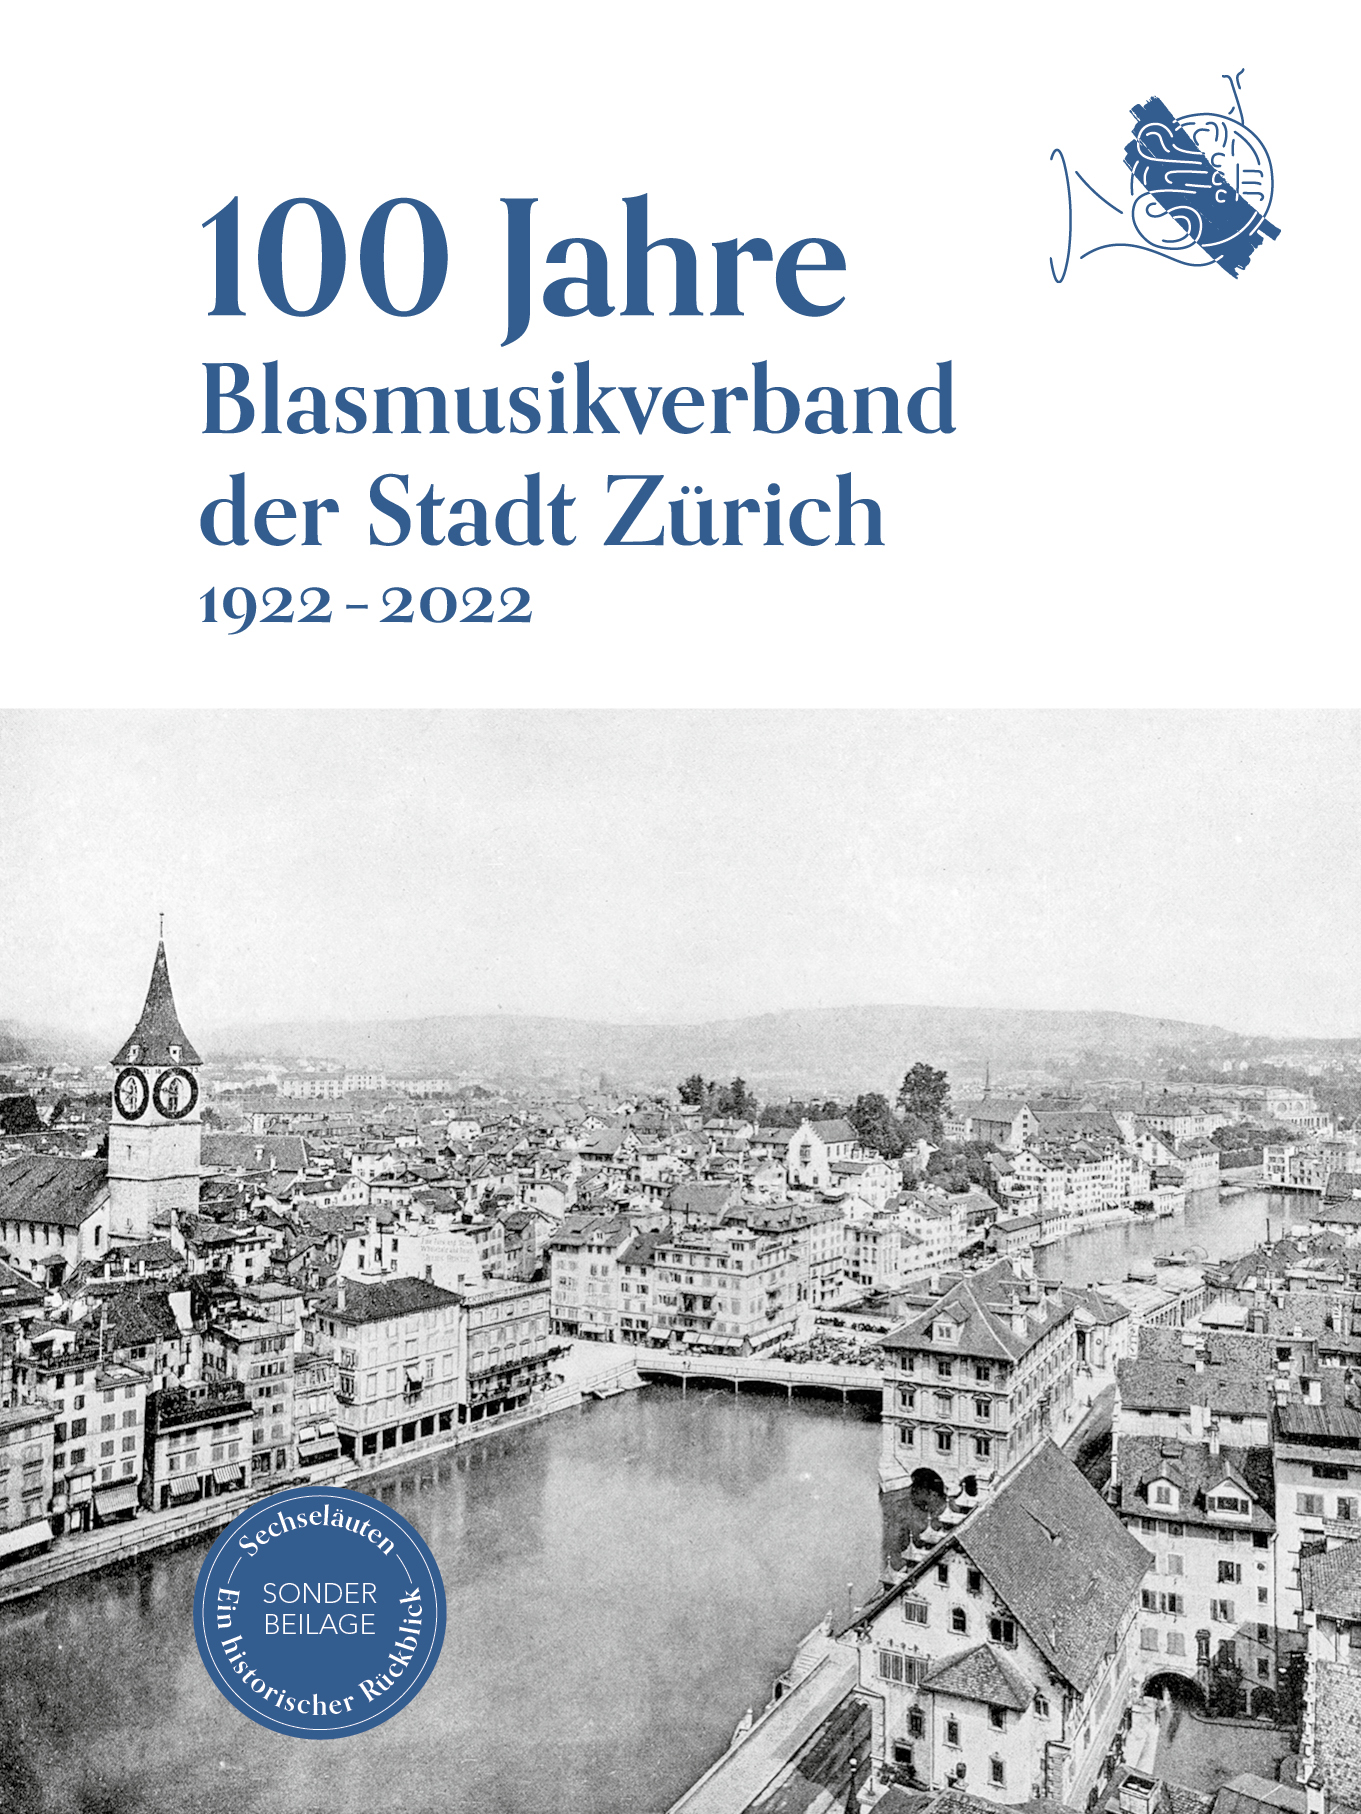 100 Jahre Blasmusikverband der Stadt Zürich